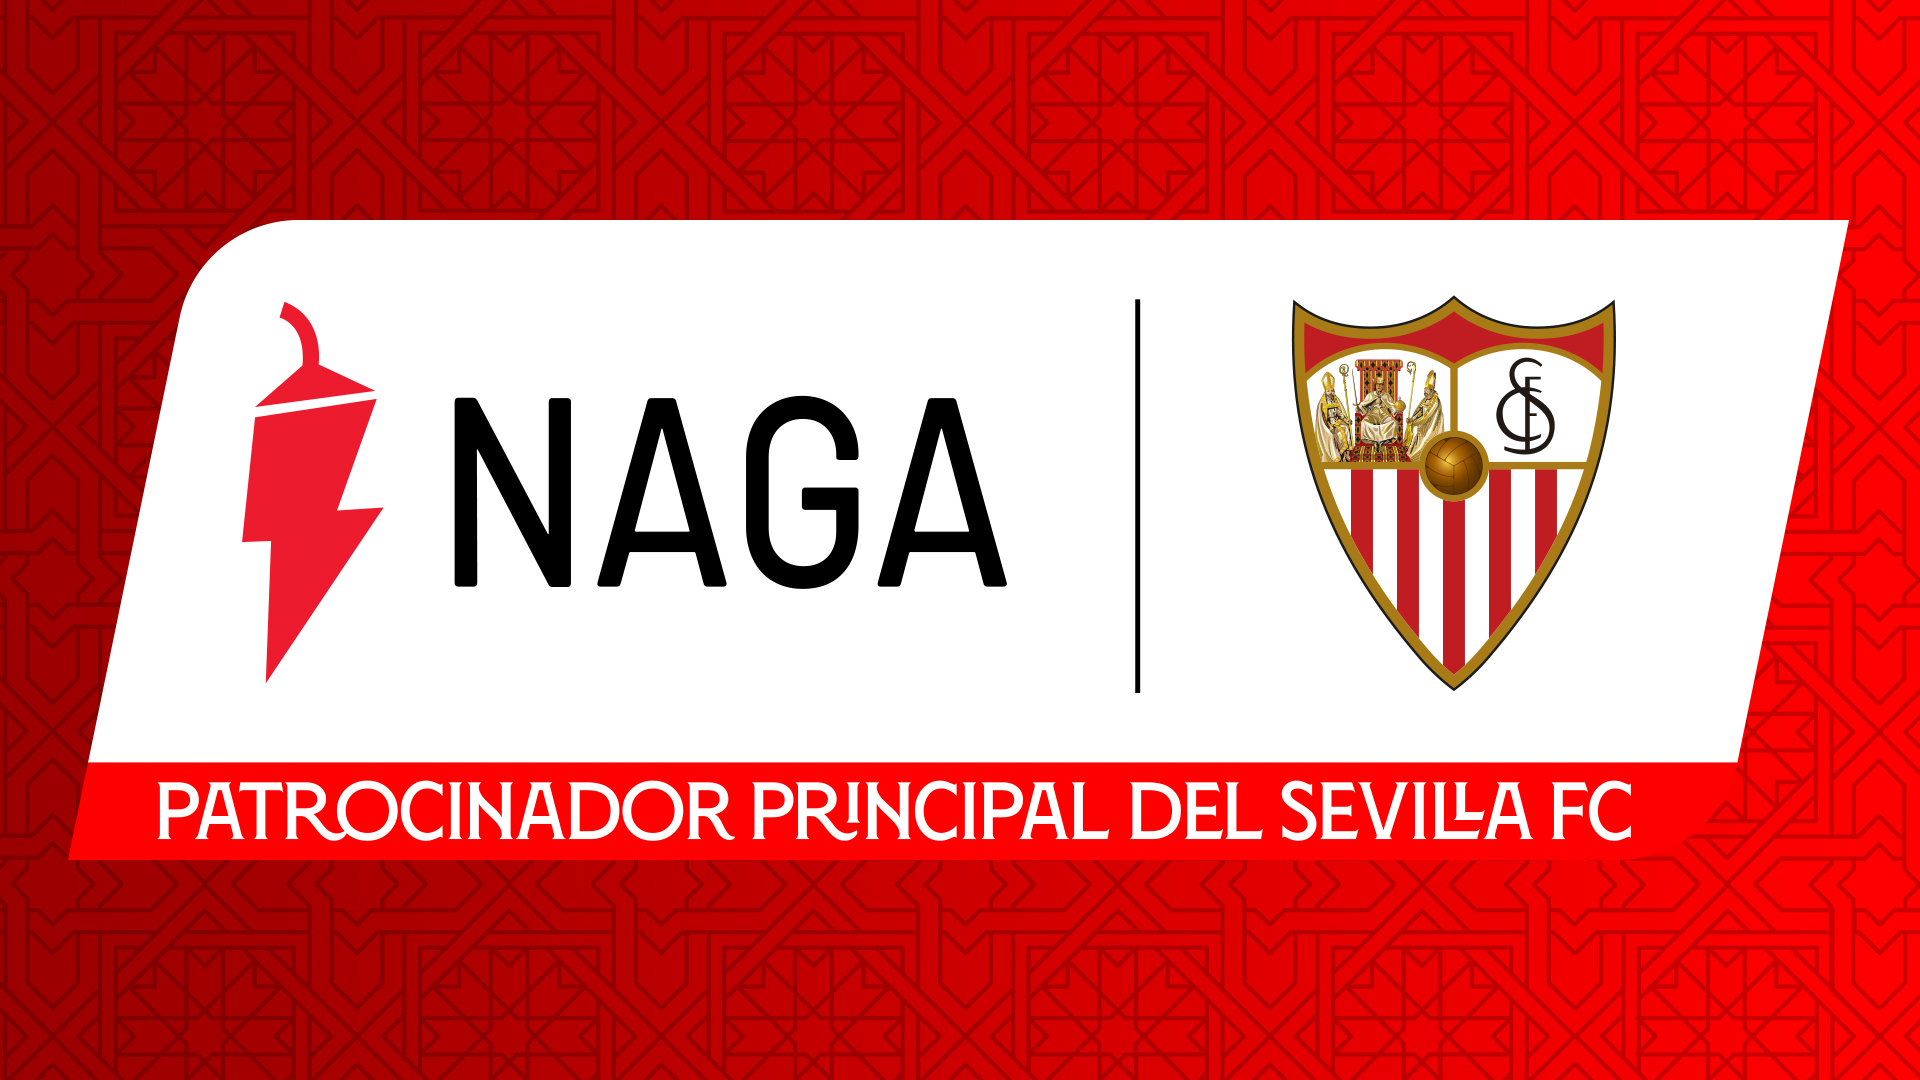 Naga, patrocinador principal del Sevilla FC